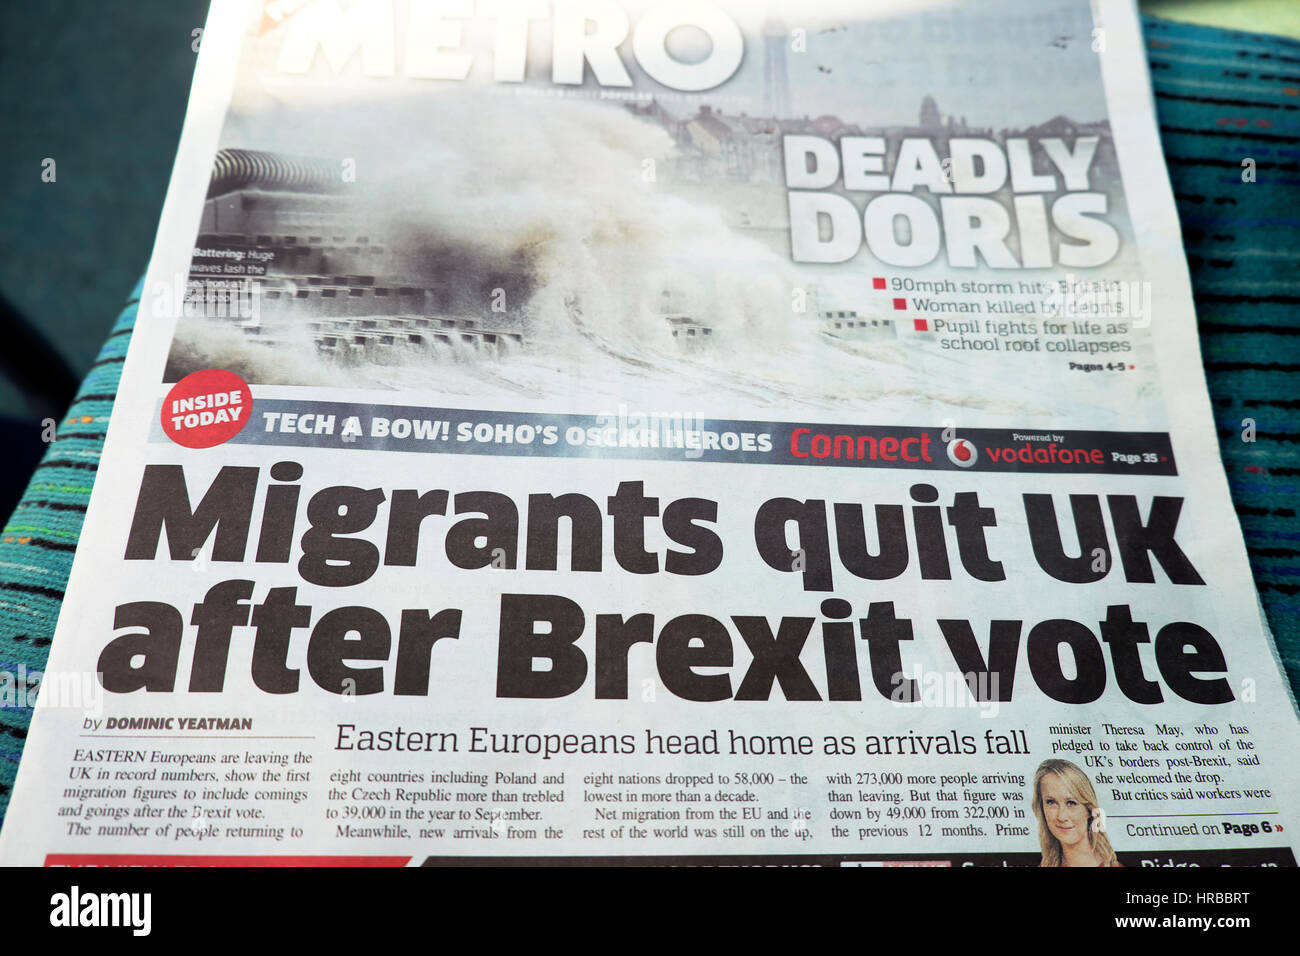 "Les Manrants ont quitté le Royaume-Uni après le vote du Brexit" crise des migrants 24 février 2017 titre du journal Metro, Londres UK Banque D'Images